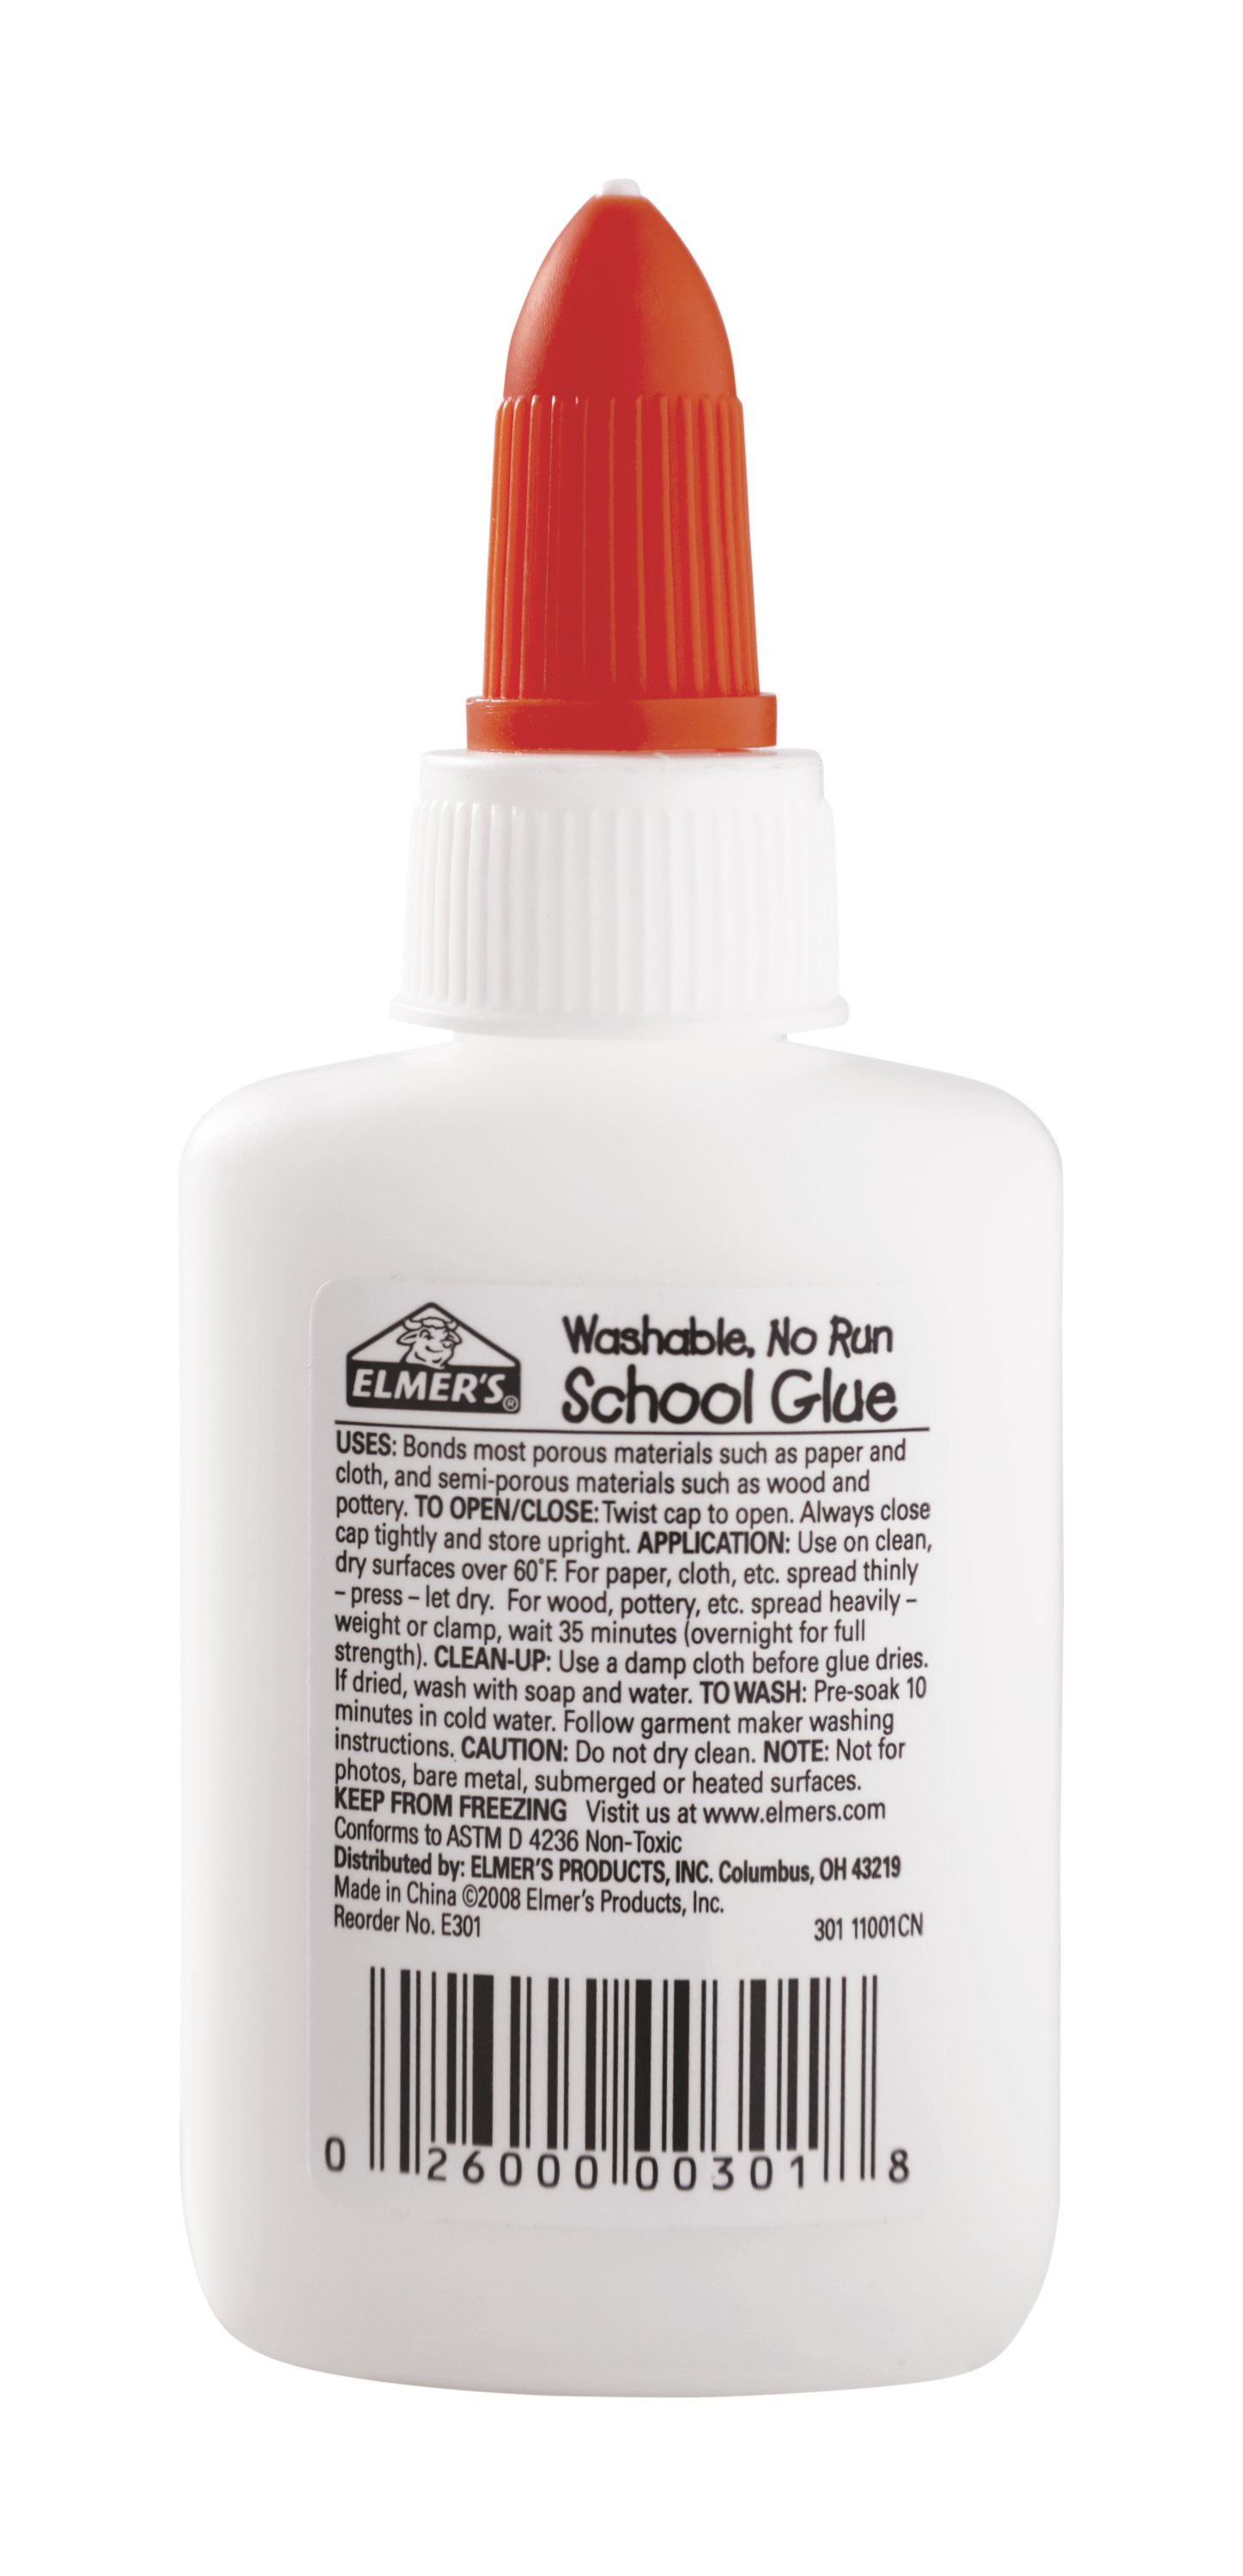 School Smart White School Glue, 1 Gallon